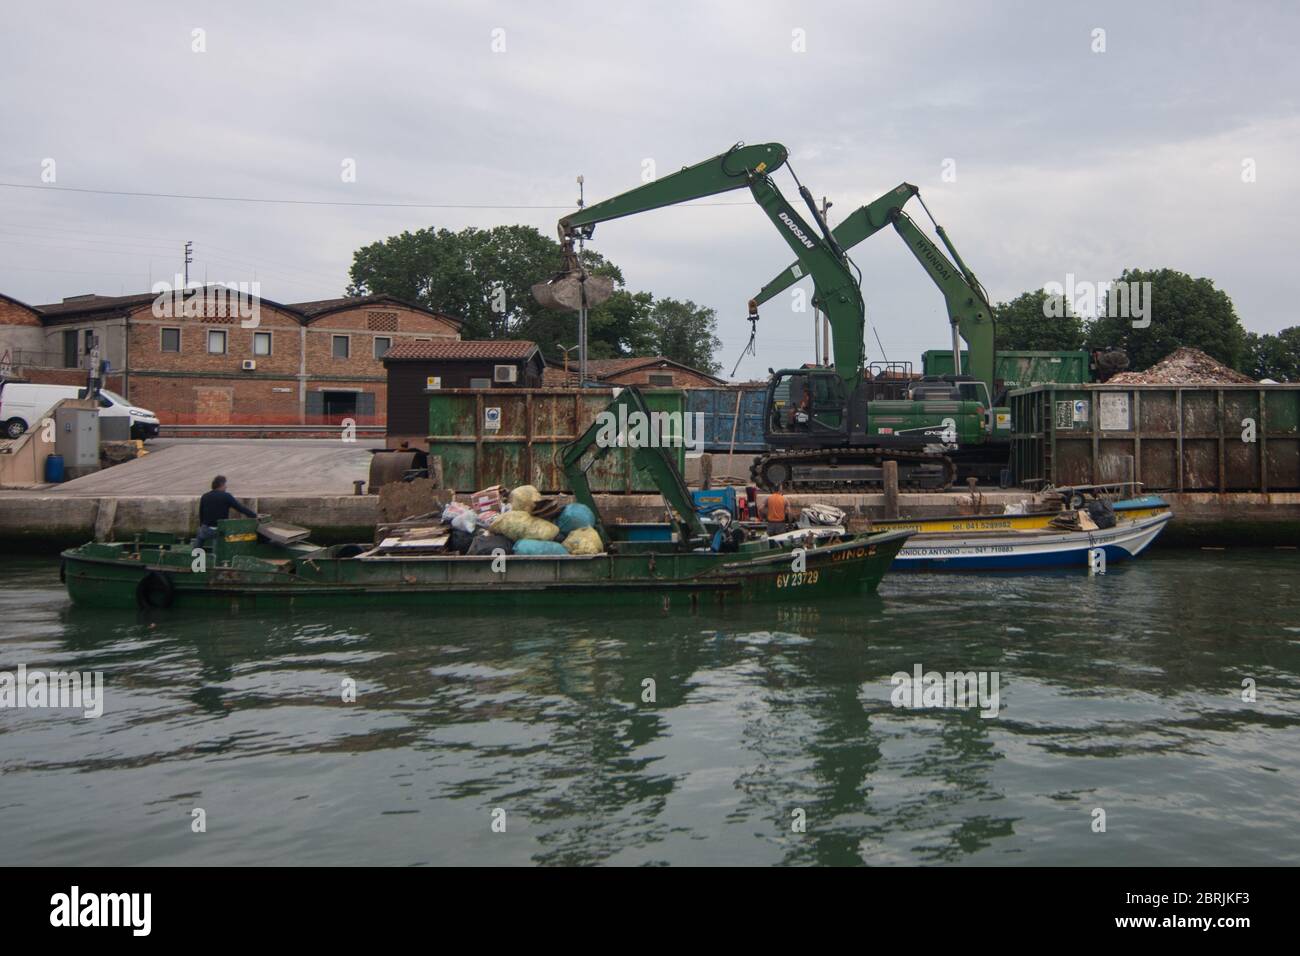 VENEZIA, ITALIA - MAGGIO:lavoratori a bordo di barche il 18 maggio 2020 a Venezia, Italia. Ristoranti, bar, caffè, parrucchieri e altri negozi hanno riaperto, oggetto t Foto Stock